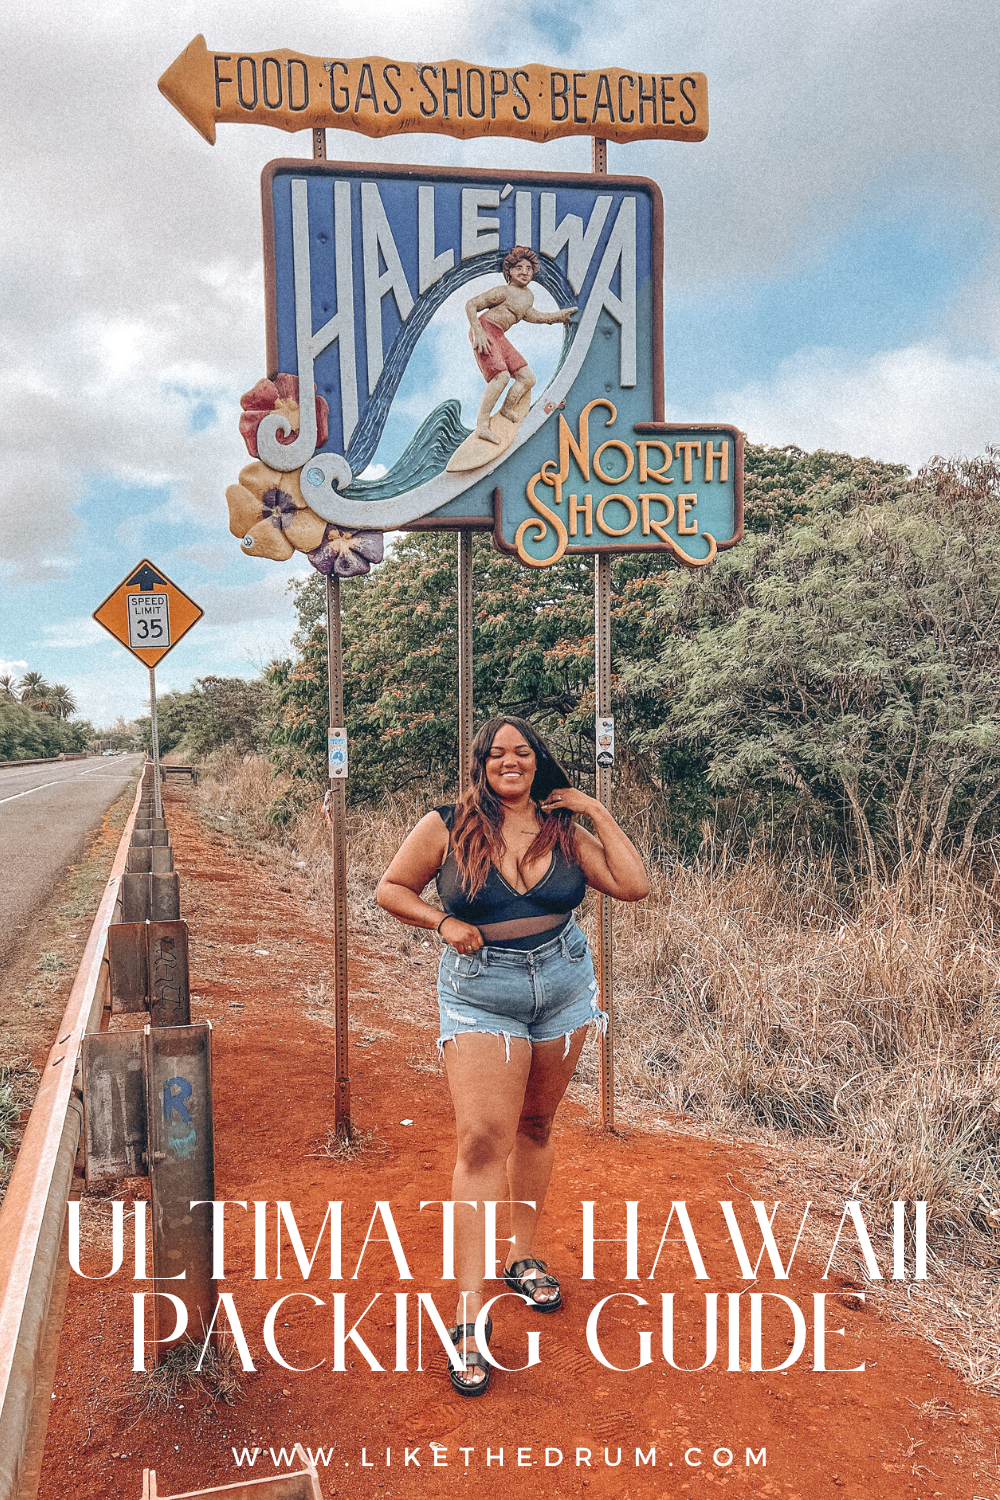 hawaii, List